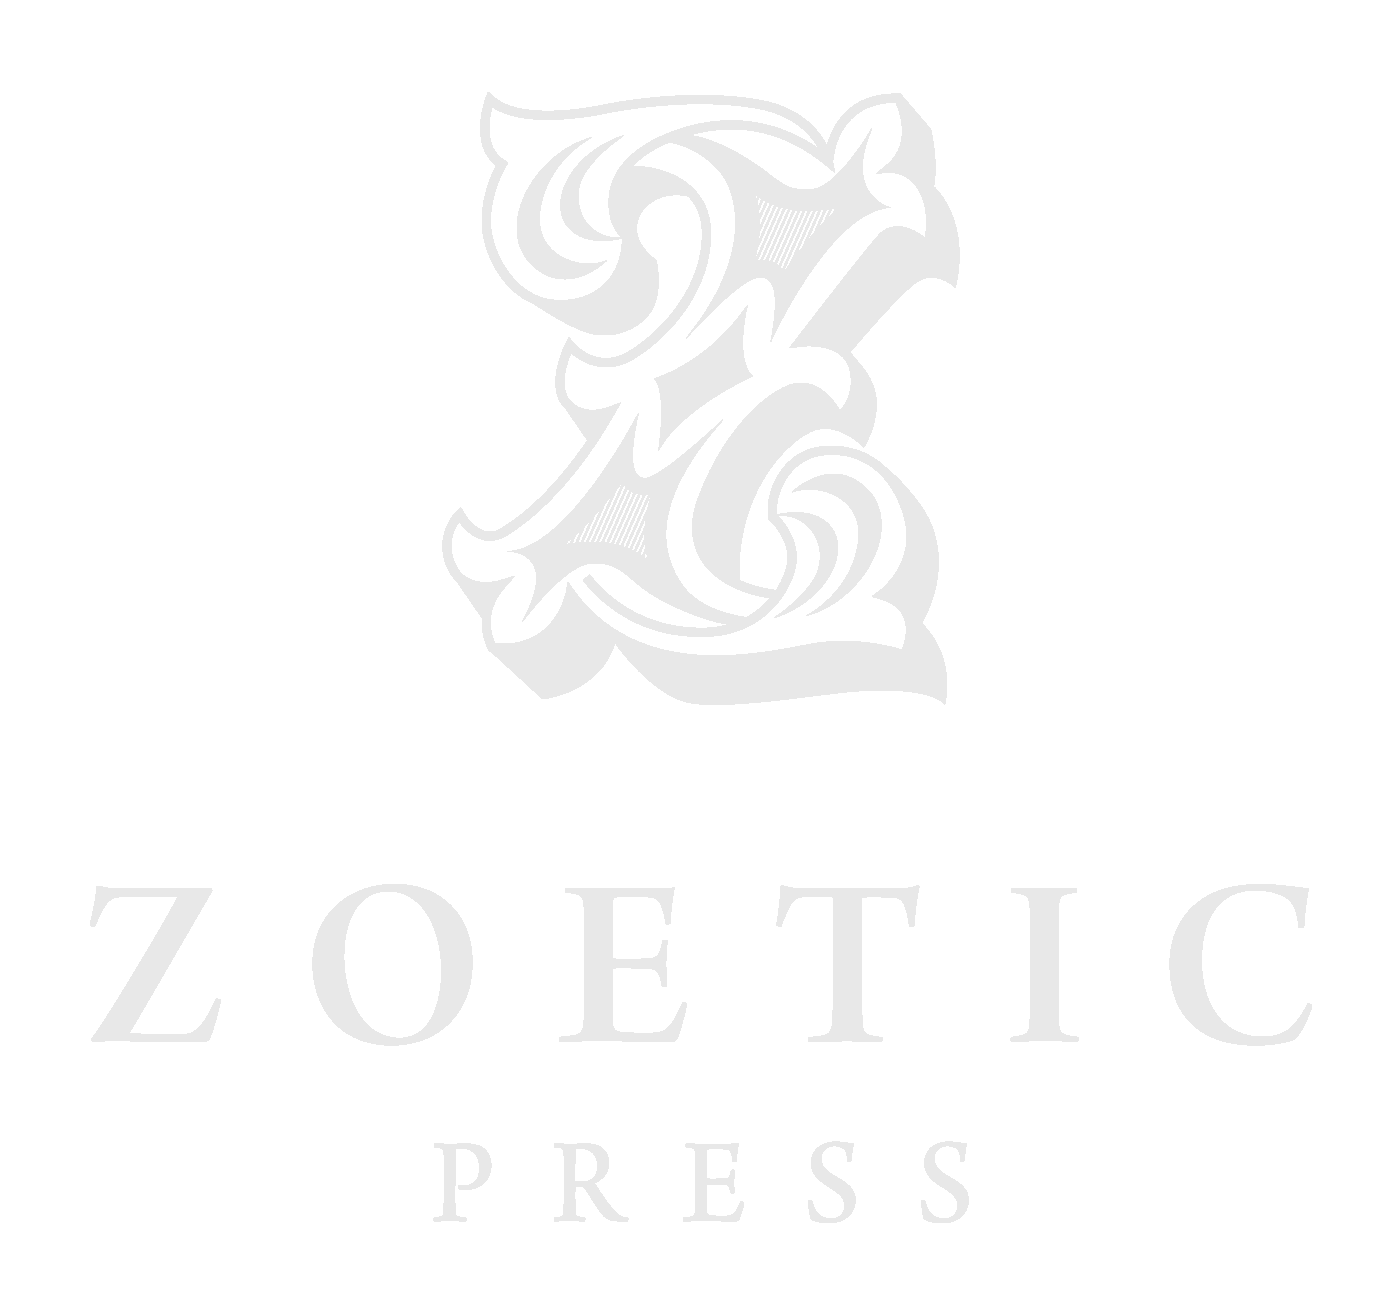 Zoetic Press